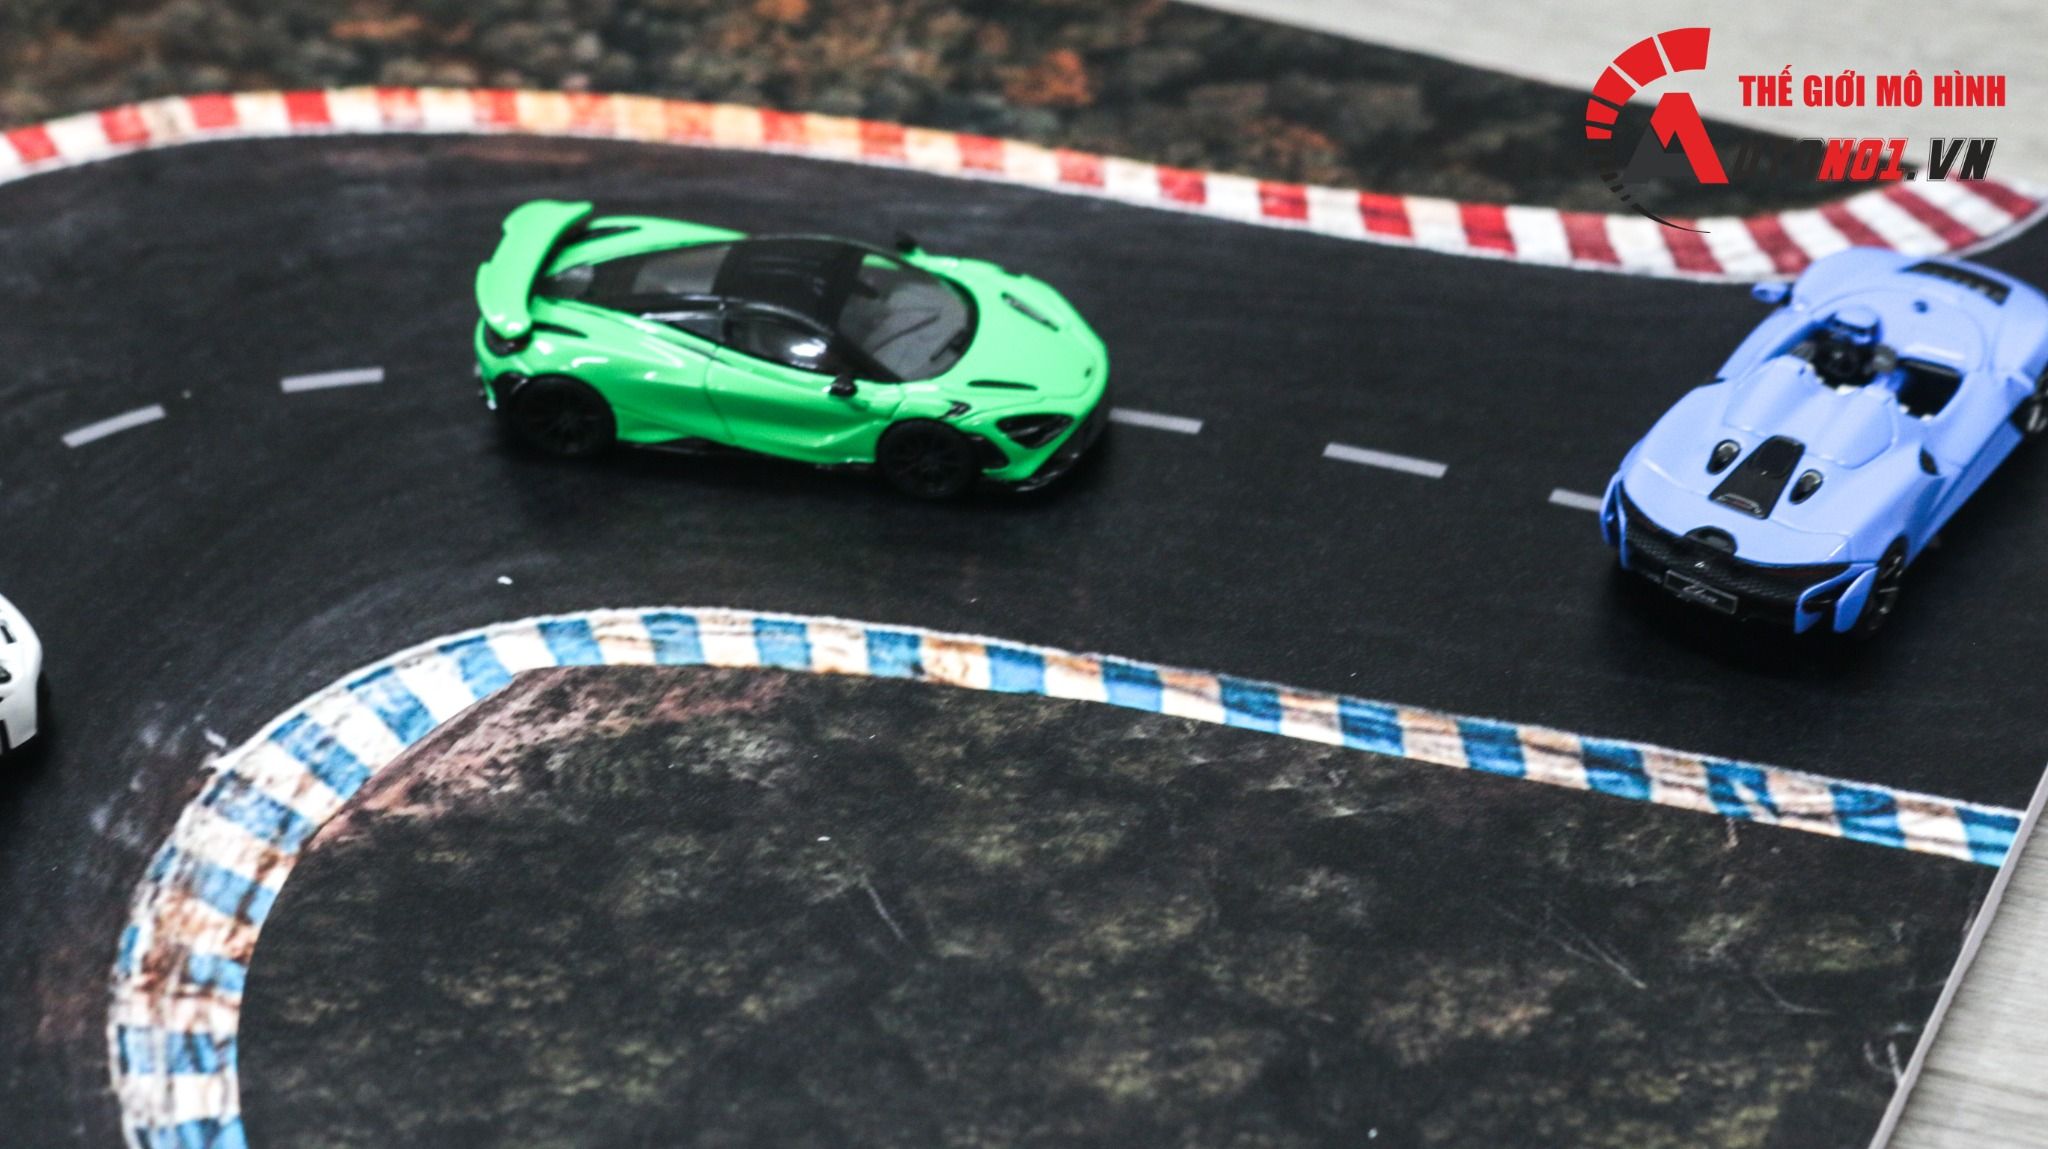  Diorama mặt đường trưng bày cho xe mô hình tỉ lệ 1:64 30x30cm Autono1 DR029 